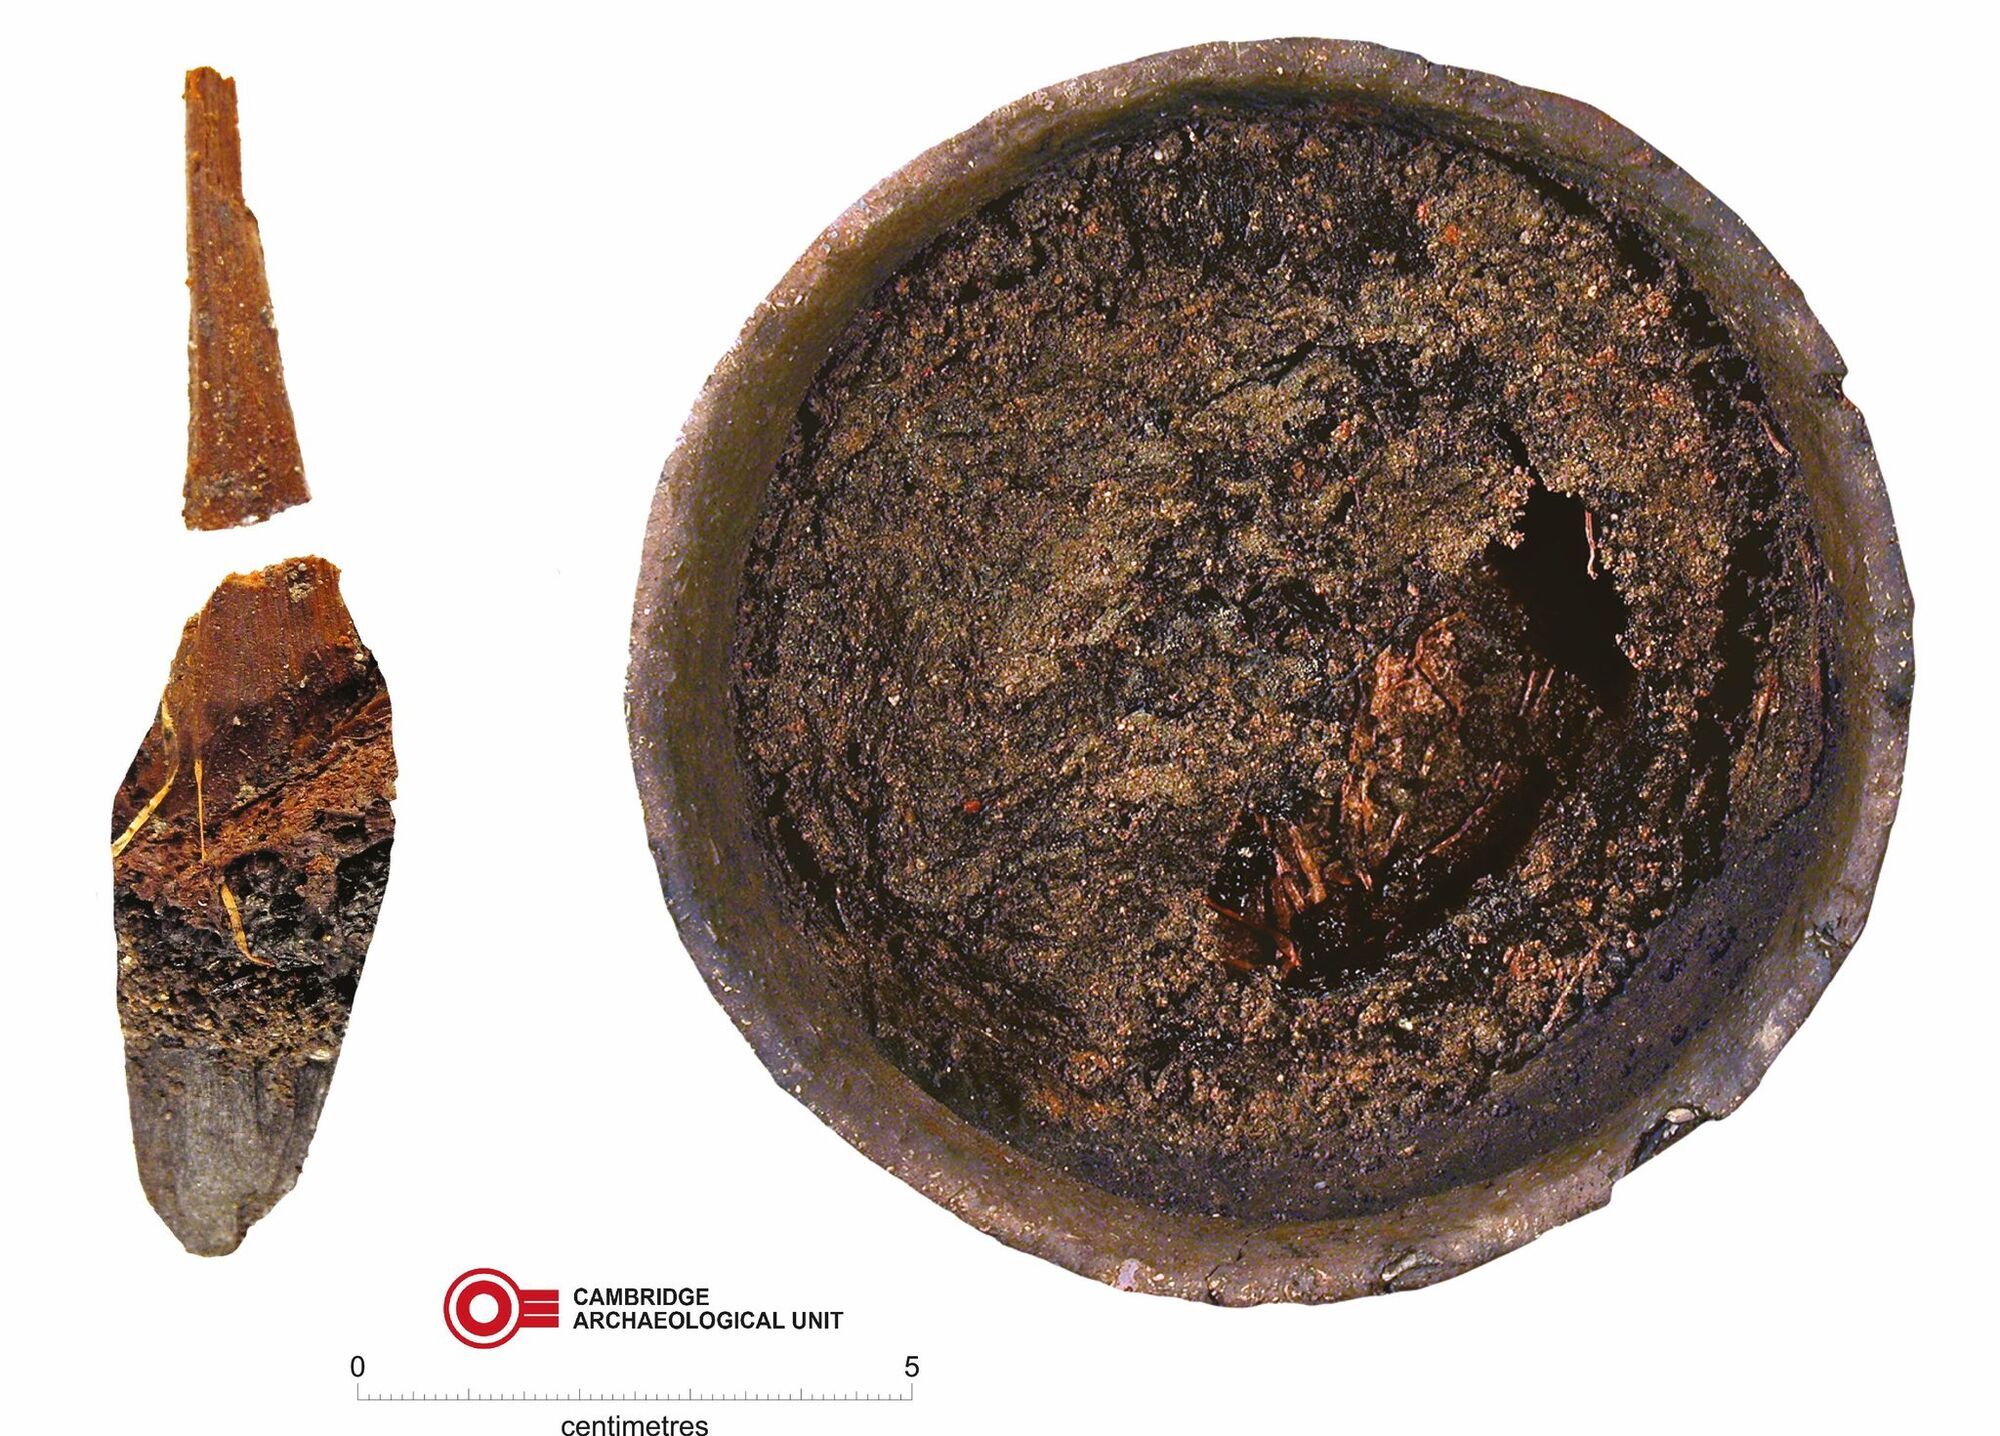 Archeolodzy odkryli w Wielkiej Brytanii pozostałości obiadu sprzed 2850 lat (zdjęcie)